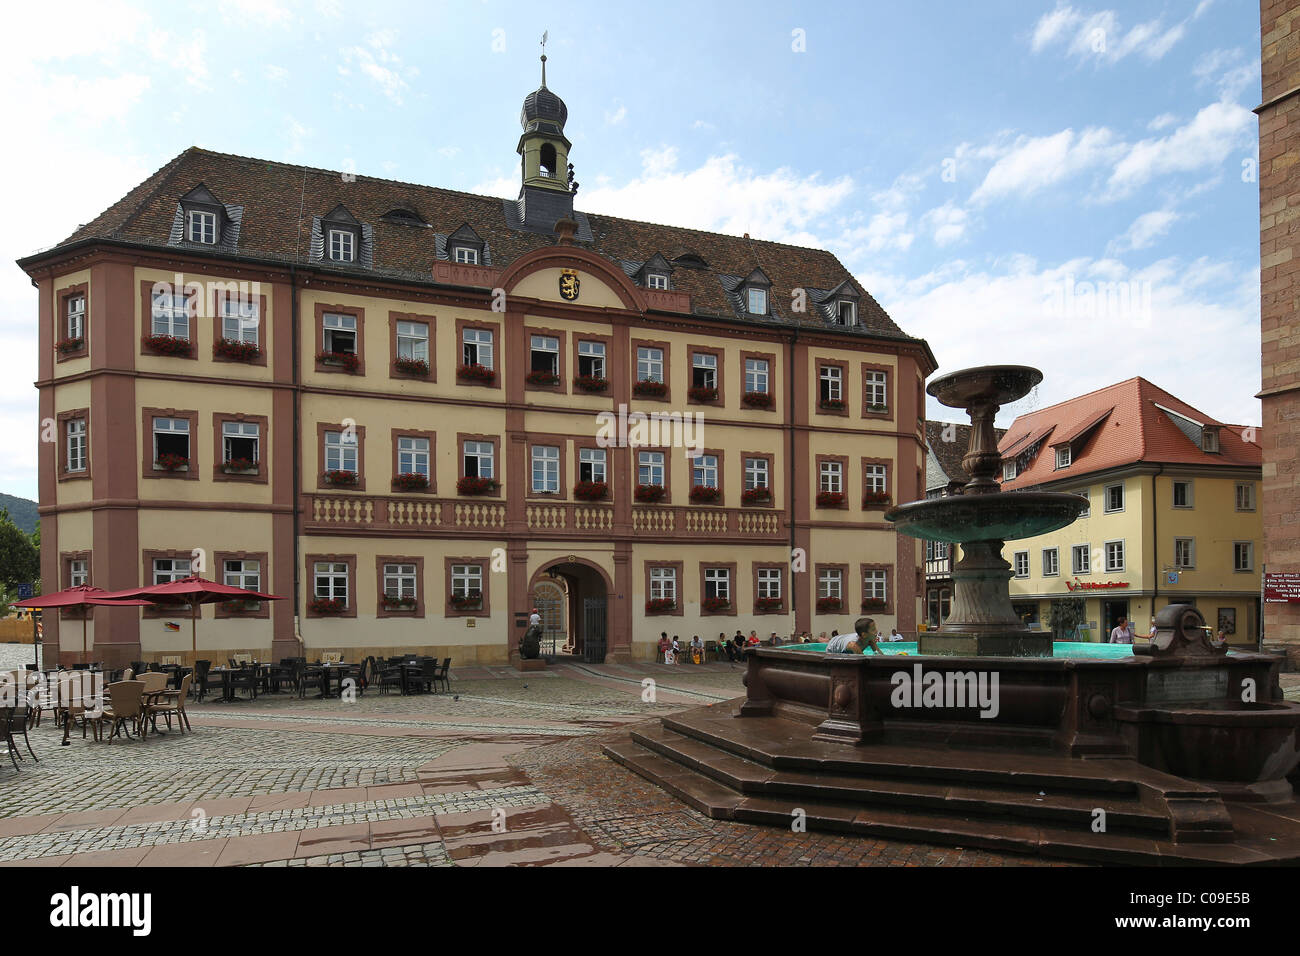 L'hôtel de ville dans la vieille ville de Neustadt an der Weinstrasse, Rhénanie-Palatinat, Allemagne, Europe Banque D'Images